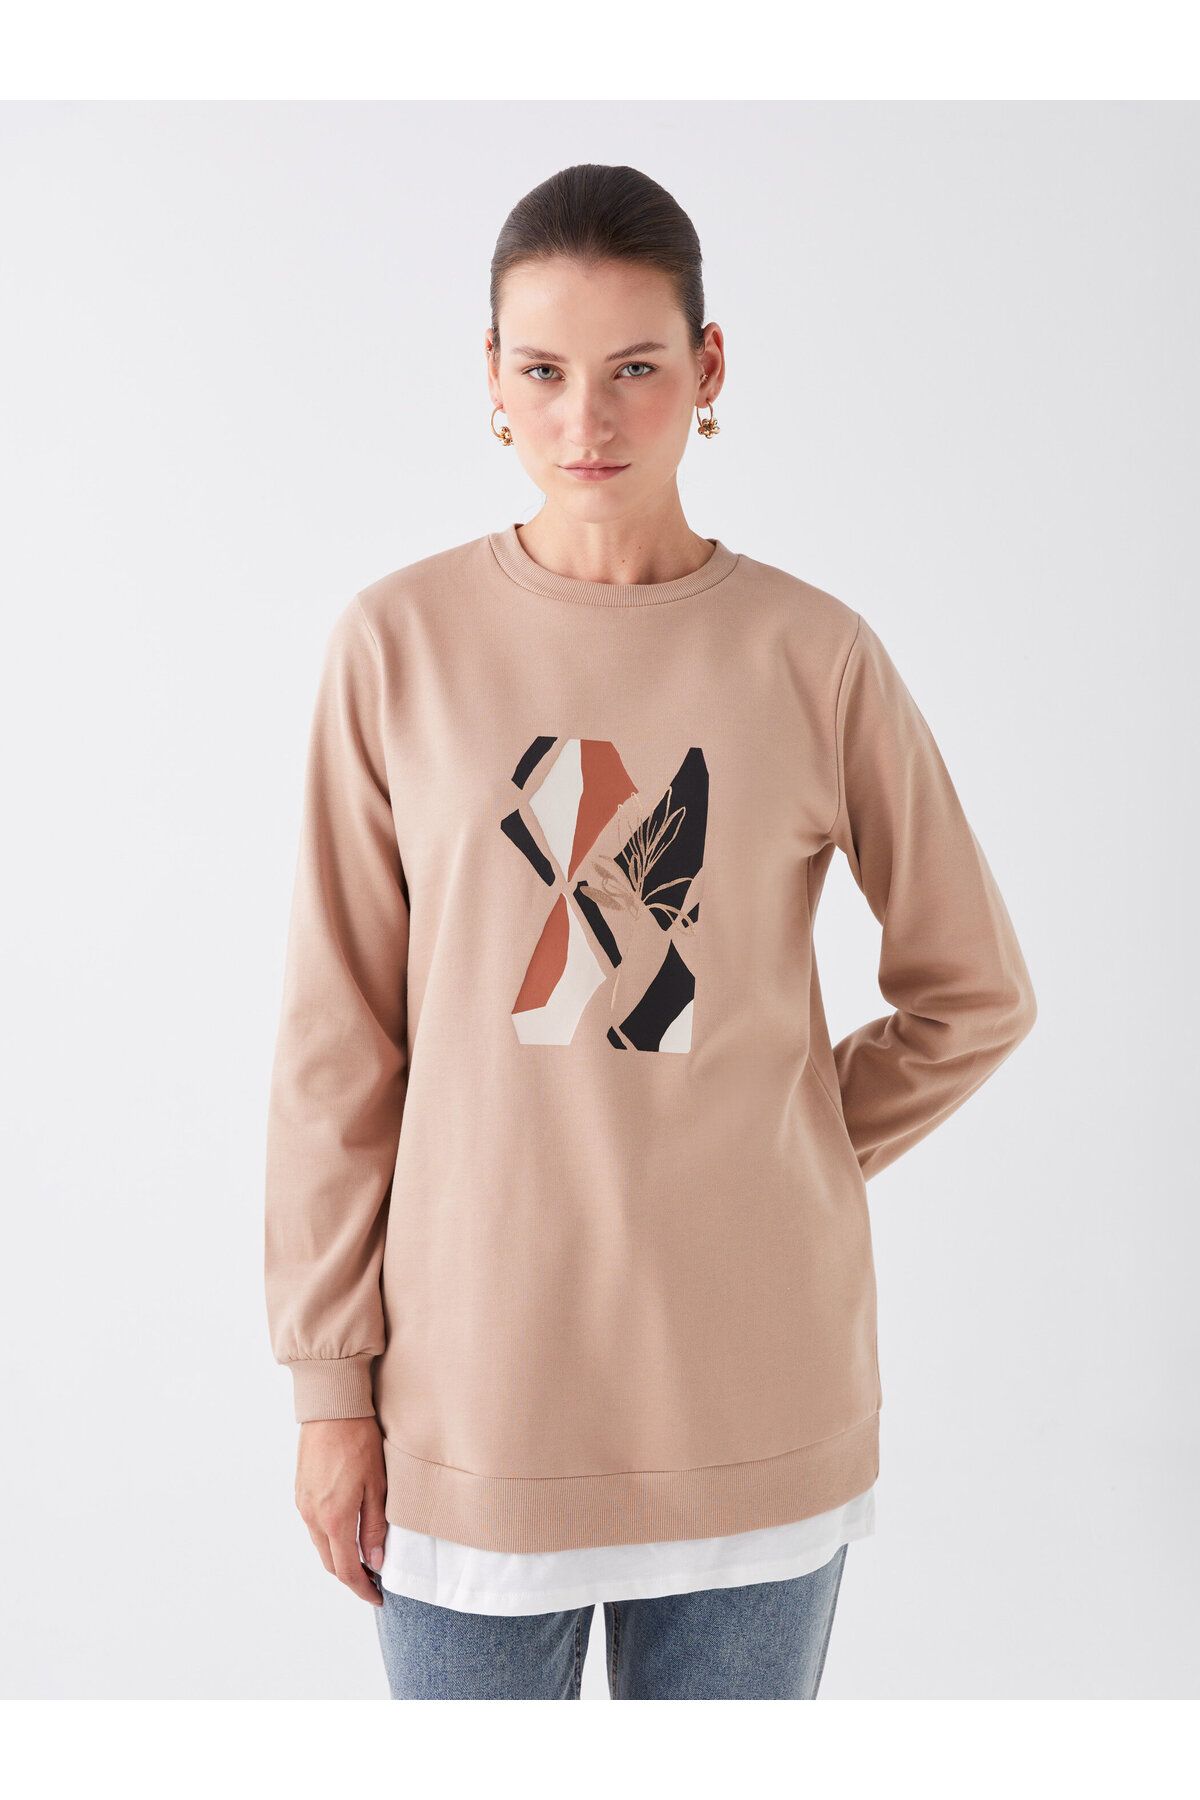 Crew Neck Printed Long Sleeve Oversize Women's Sweatshirt Tunic